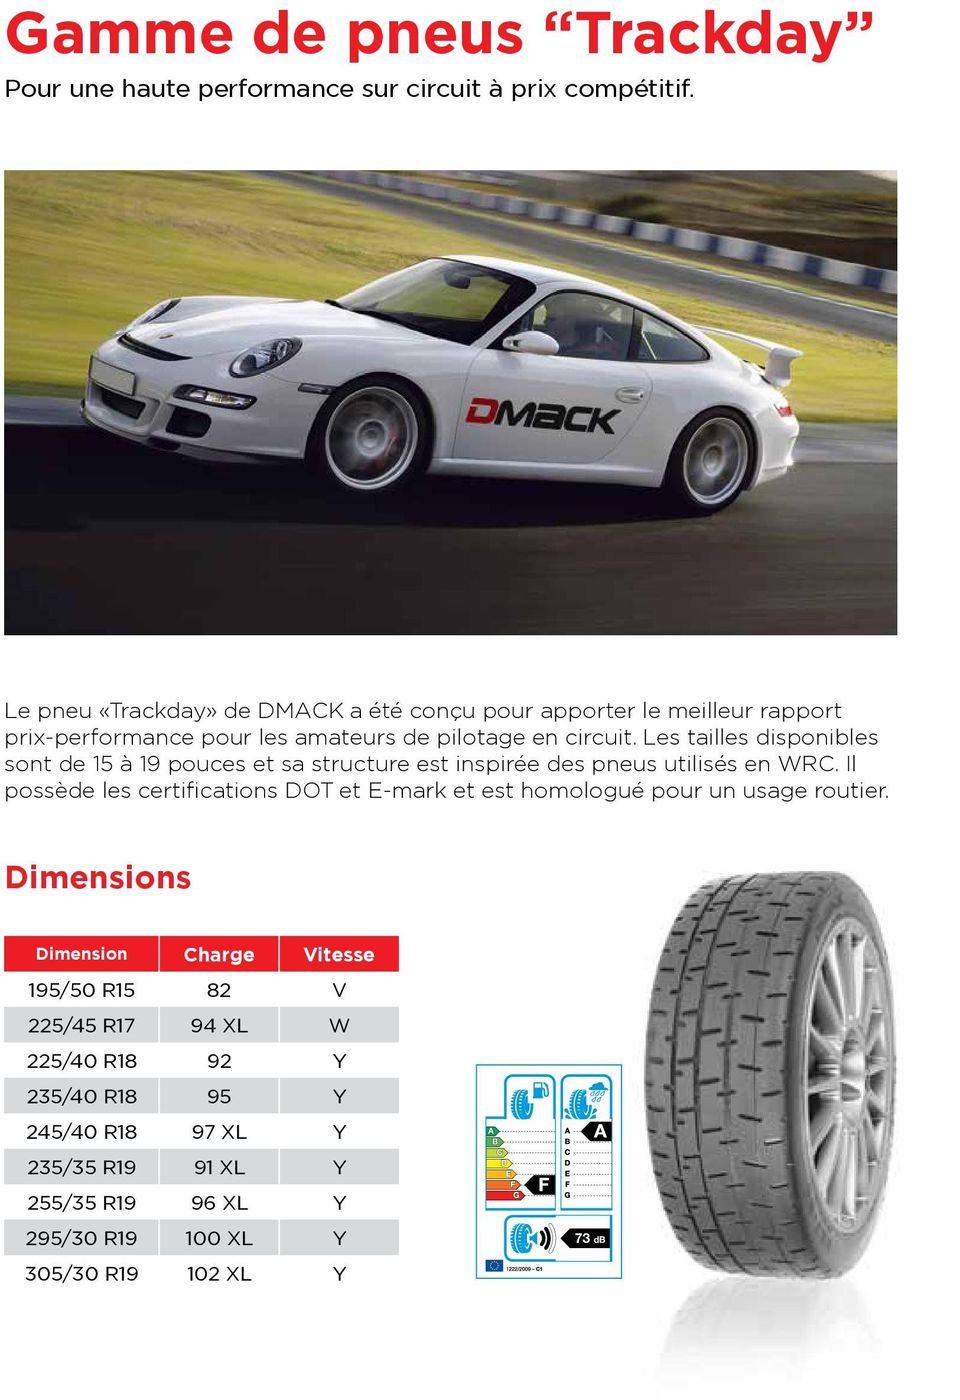 Les tailles disponibles sont de 15 à 19 pouces et sa structure est inspirée des pneus utilisés en WRC.